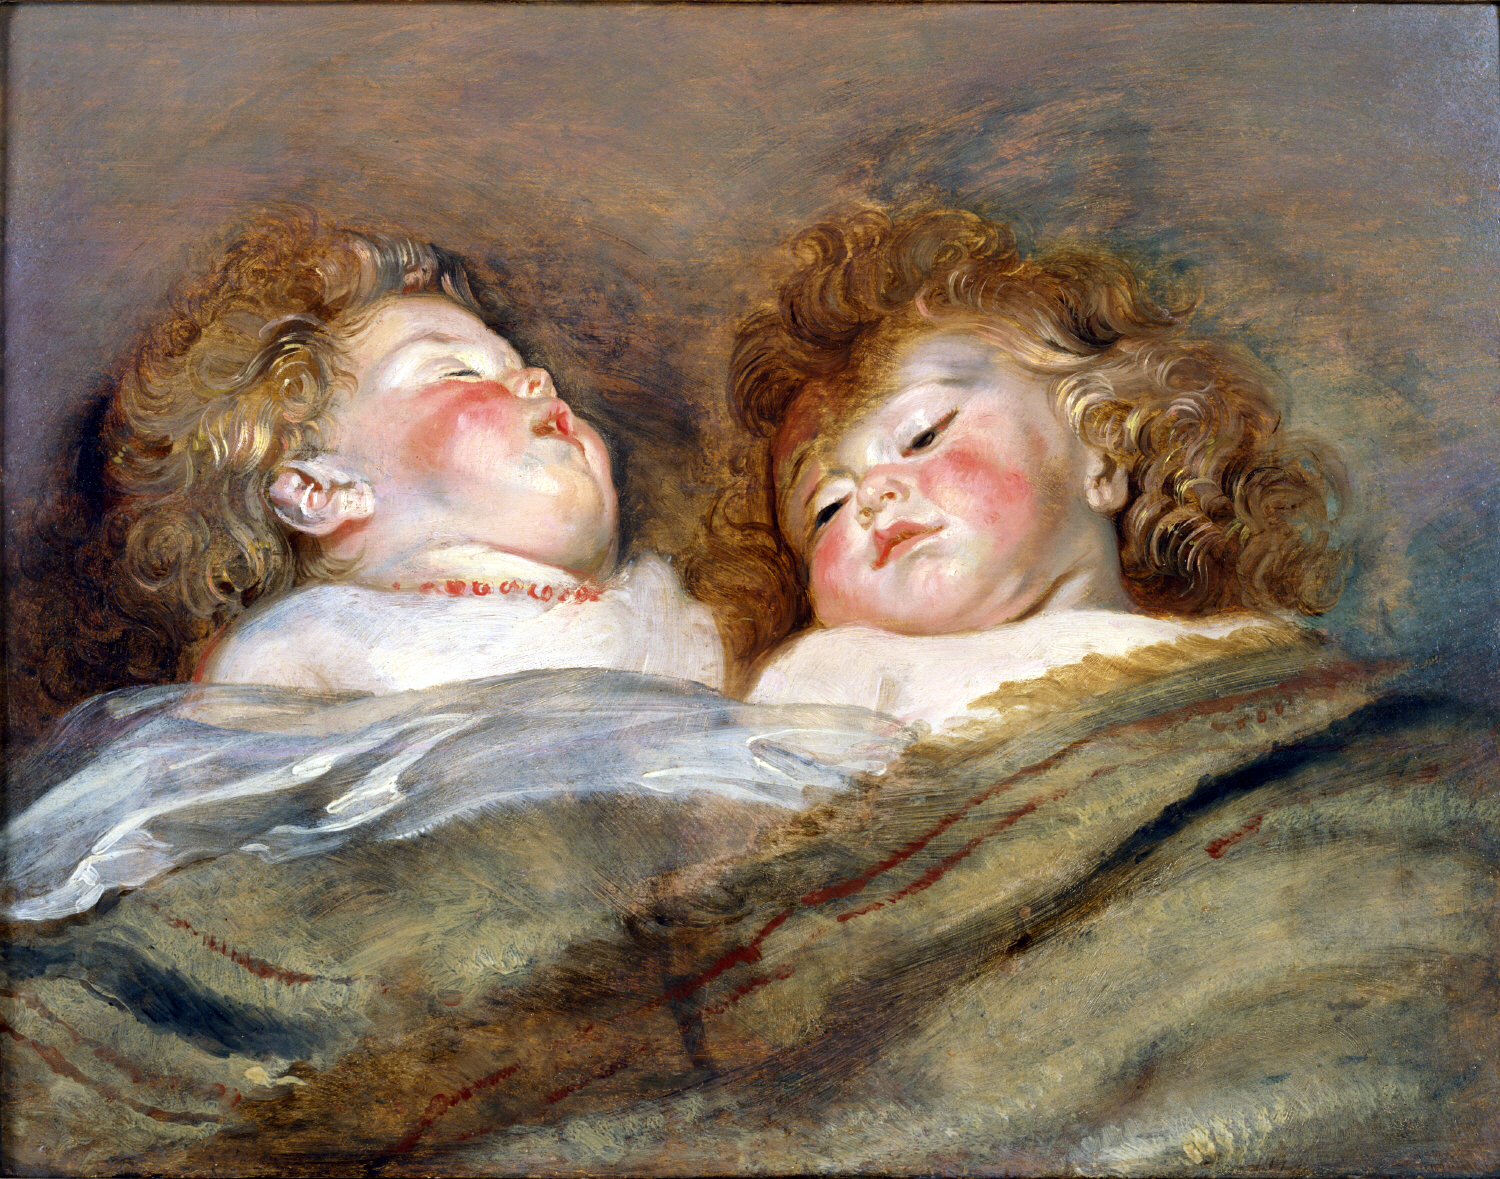 ペーテル・パウル・ルーベンス『眠る二人の子供』(1612-13)